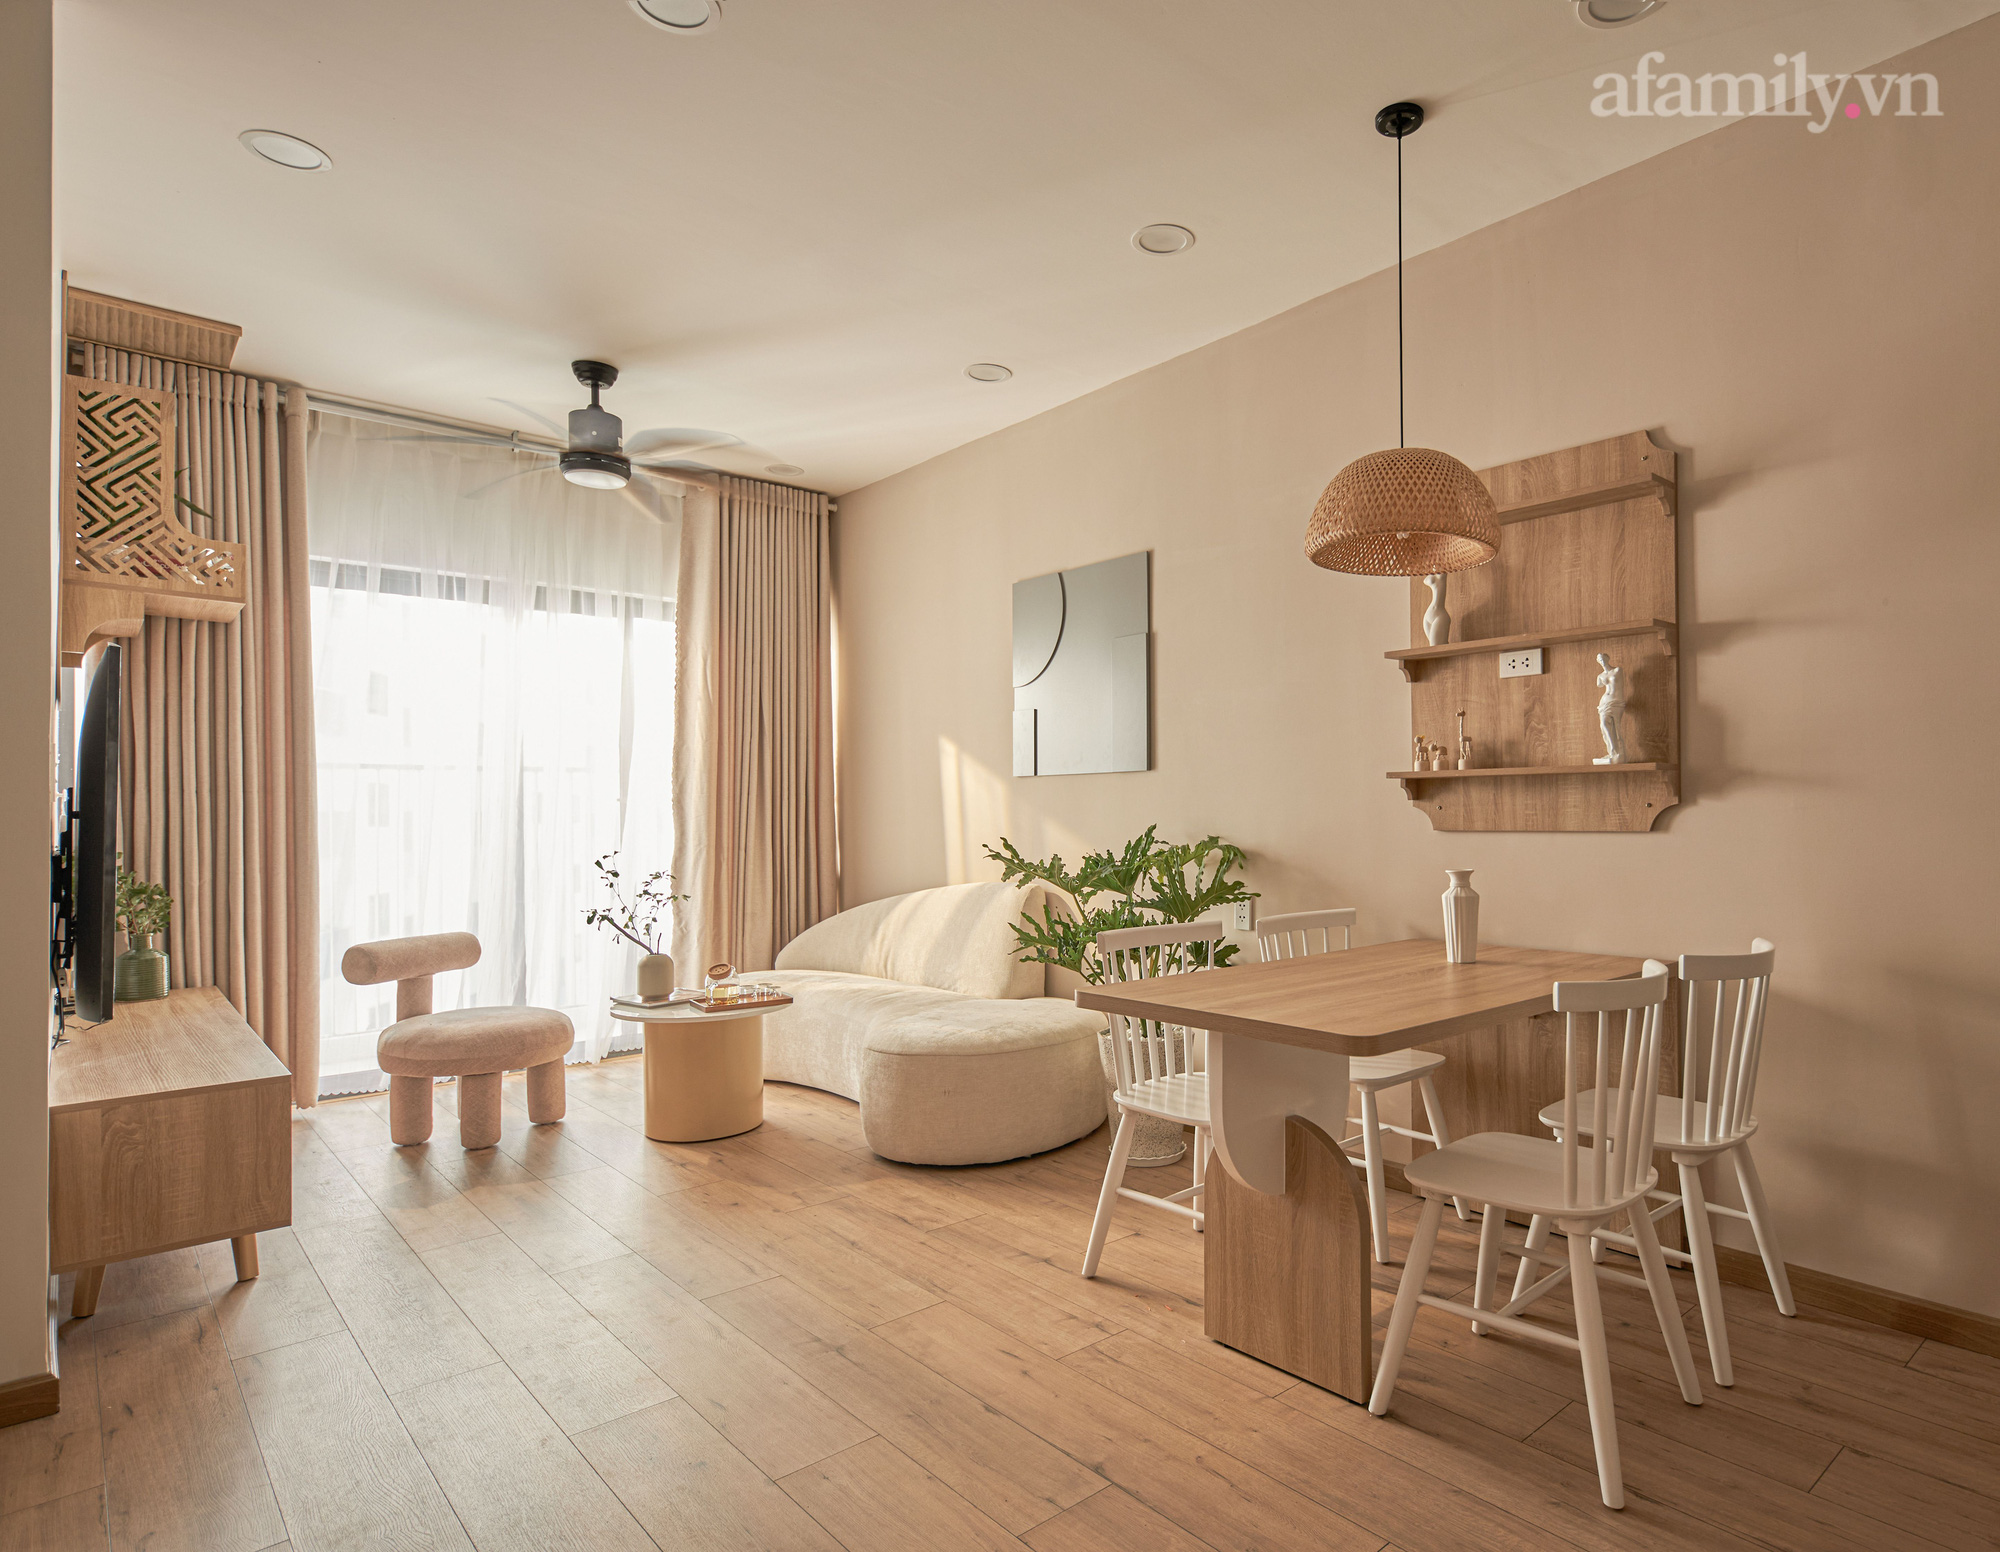 Thiết kế căn hộ nhà ở xã hội 63m² tại Nha Trang, diện tích nhỏ nhưng tối giản, gam trung tính đầy cảm hứng - Ảnh 7.